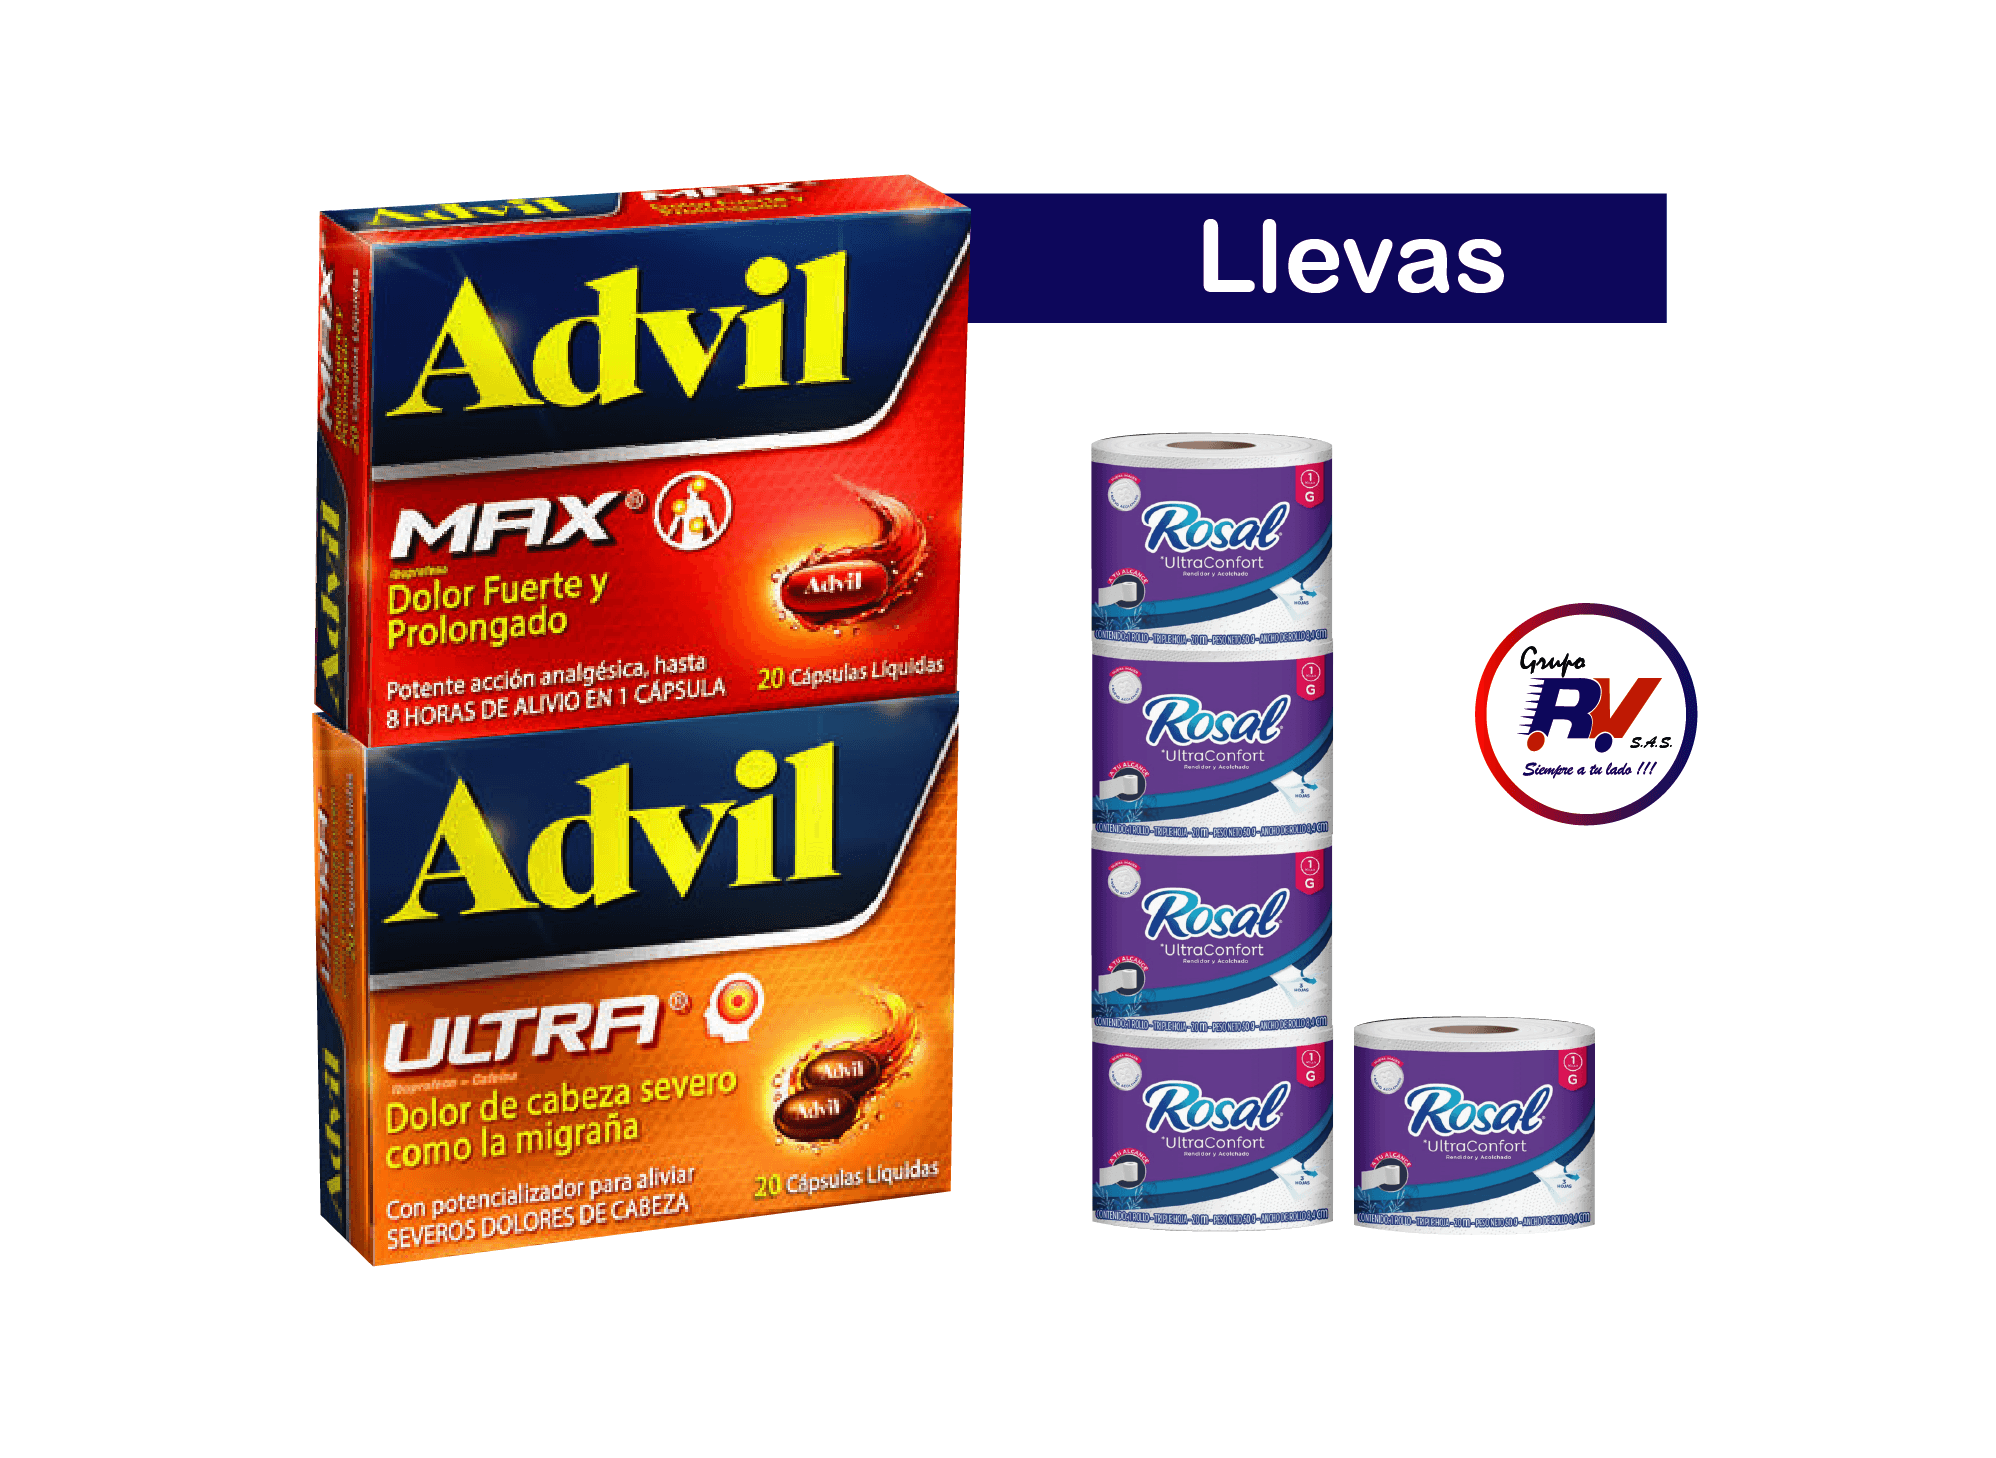 Advil Max Caja x 20 Cápsulas + Advil Ultra Caja x 20 Cápsulas Gratis Papel Higienico Rosal Morado x 5 Un